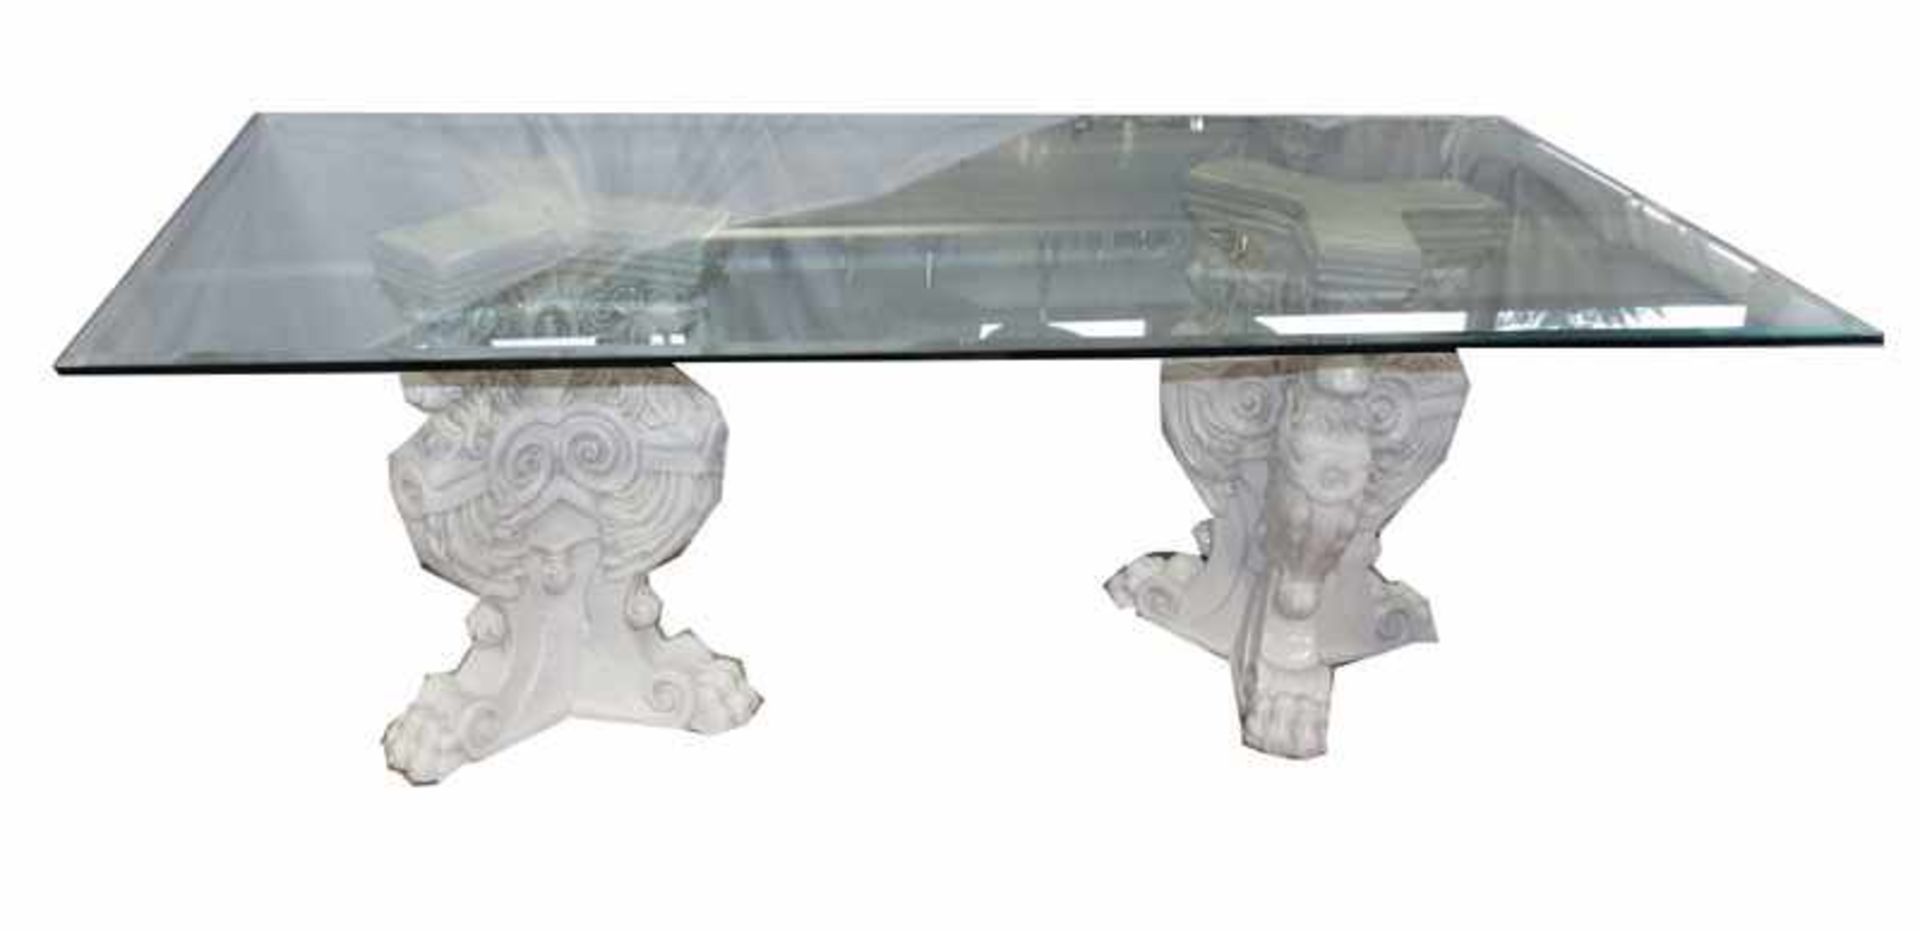 Tisch, 2 Keramiksäulen mit reliefiertem Löwendekdor, weiß glasiert, und Glasplatte mit